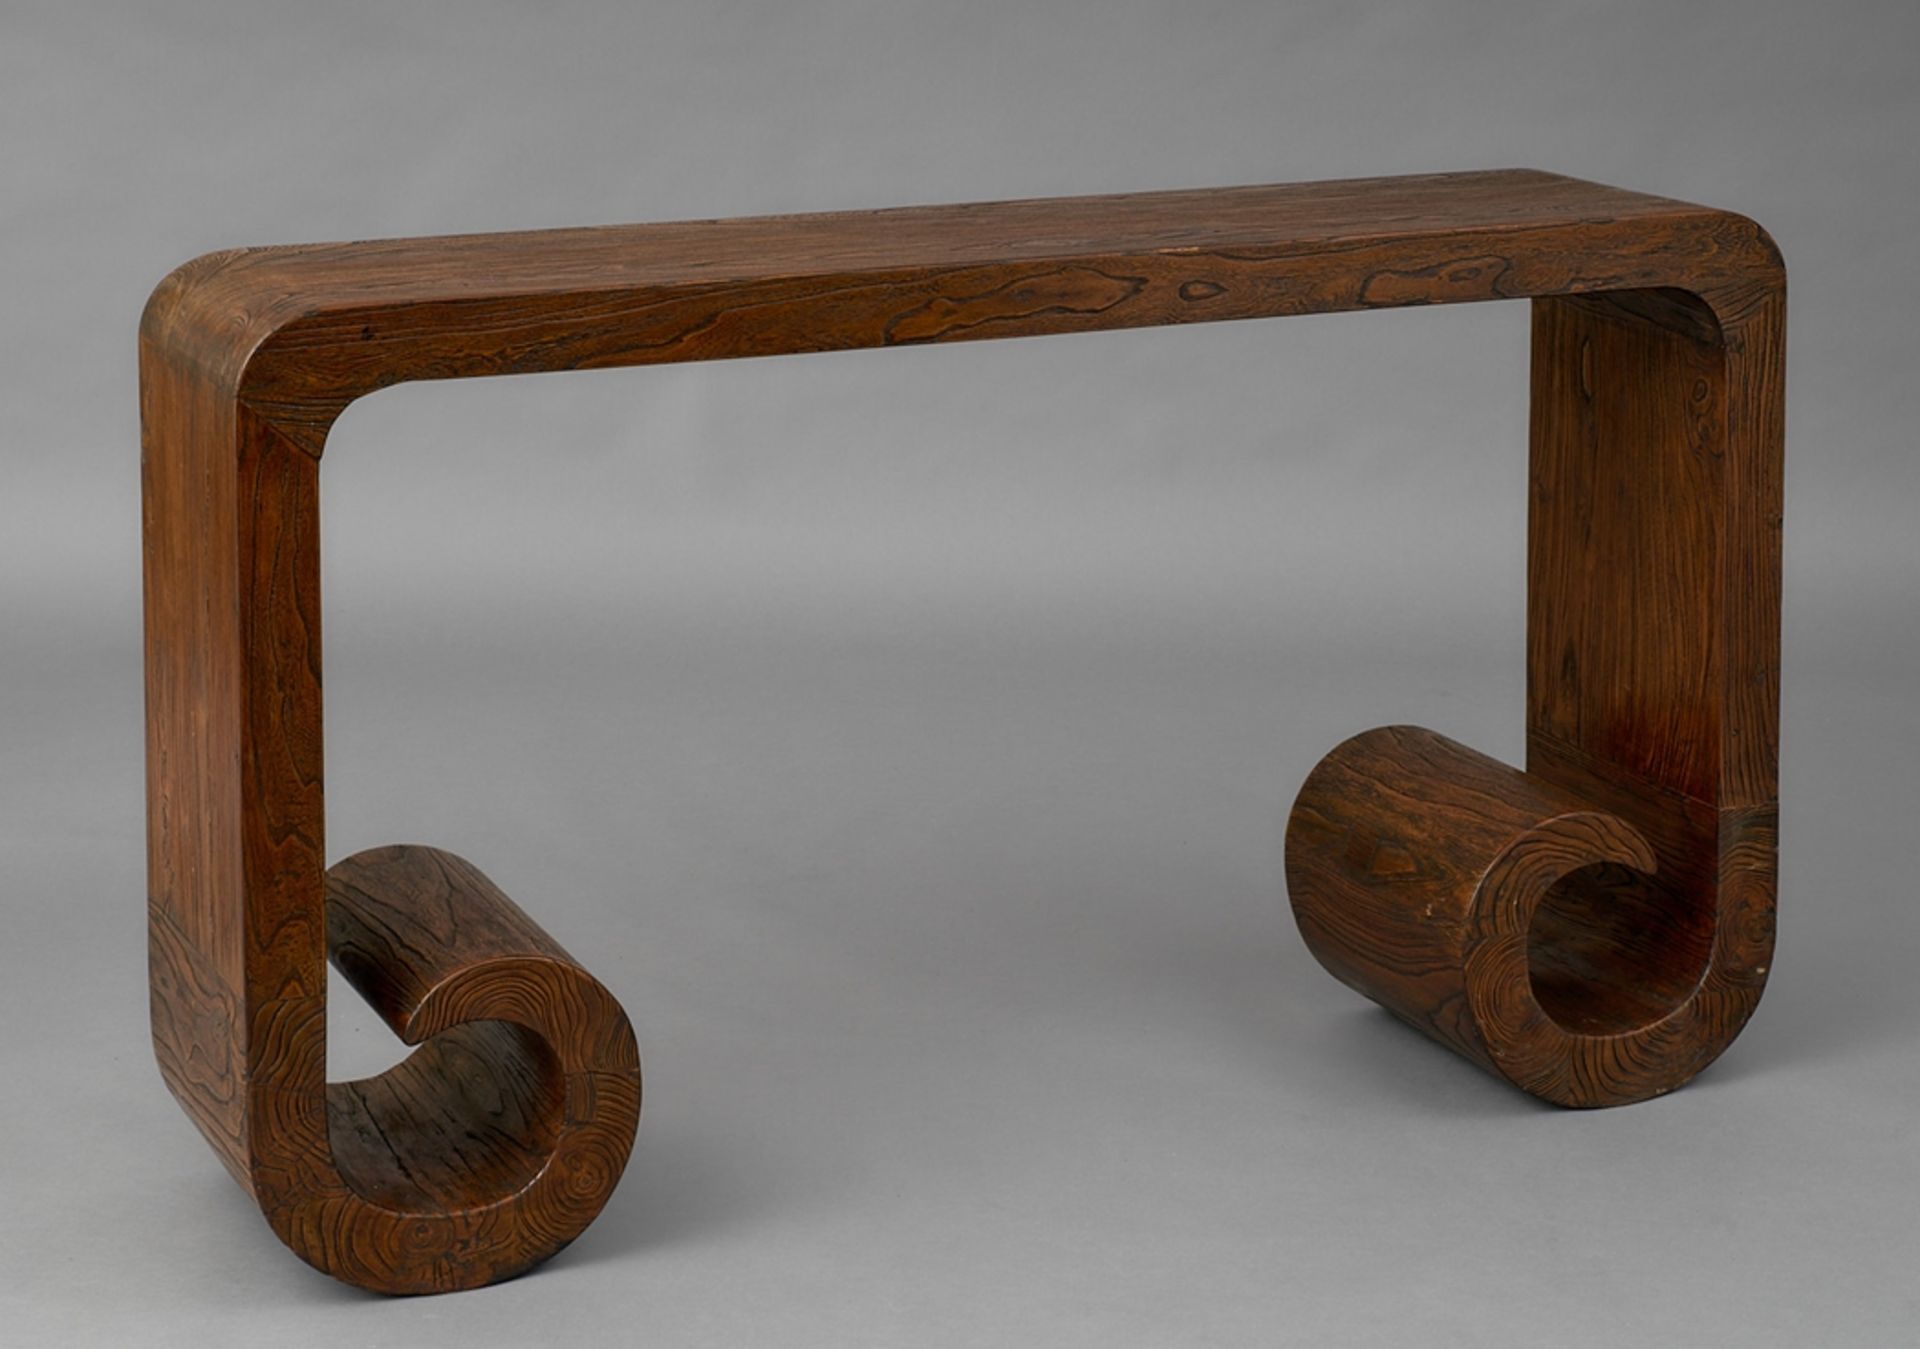 Chinesischer Tisch. Eingerollte Wangen. Ulme. 84 x 147 x 35 cm